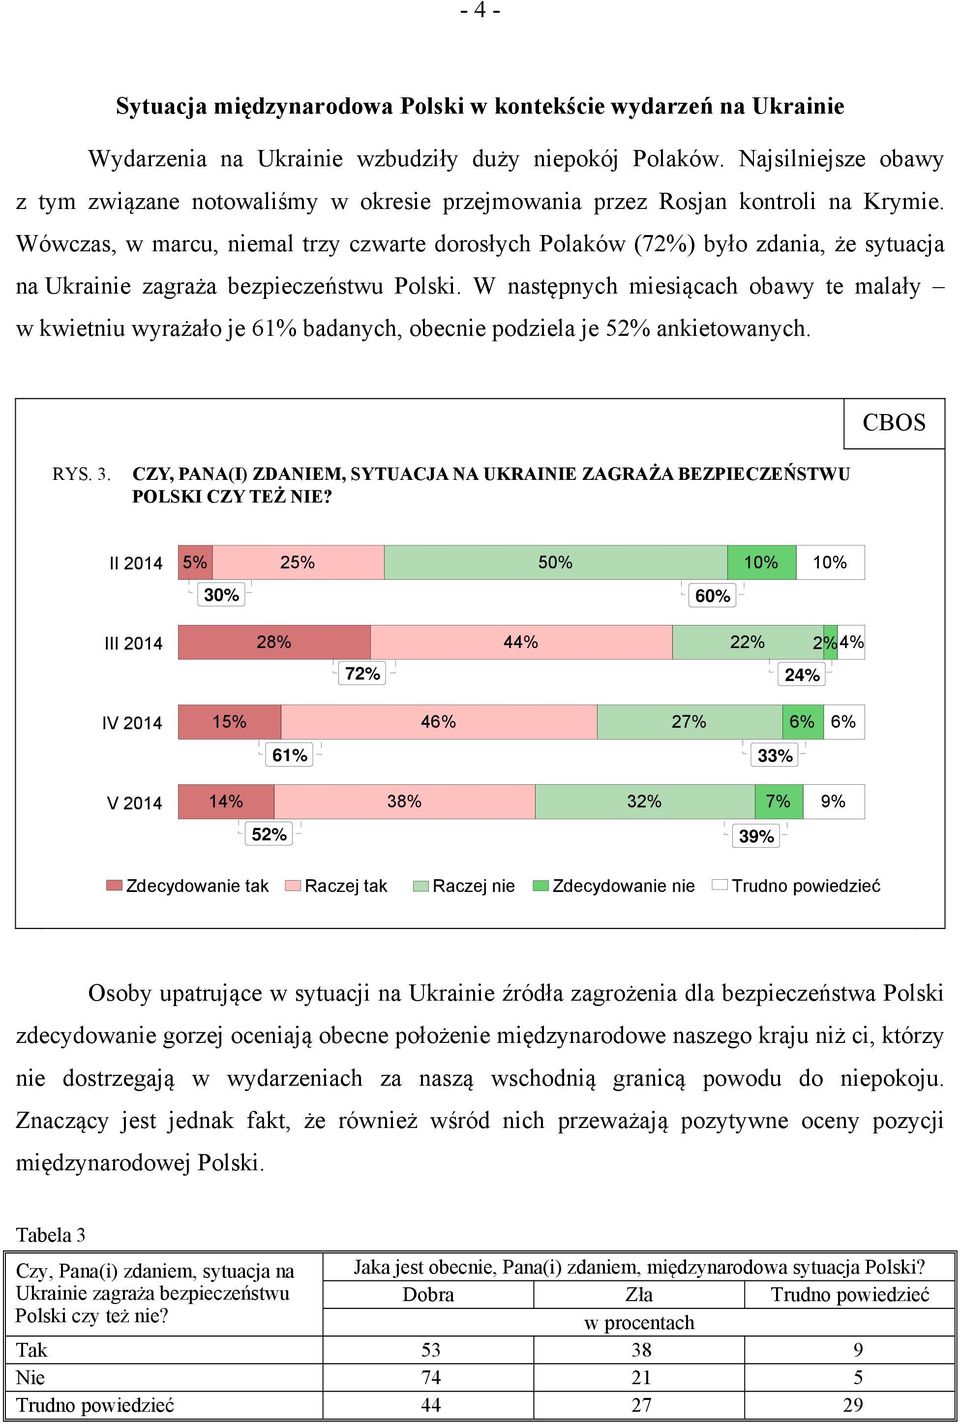 Wówczas, w marcu, niemal trzy czwarte dorosłych Polaków (72%) było zdania, że sytuacja na Ukrainie zagraża bezpieczeństwu Polski.